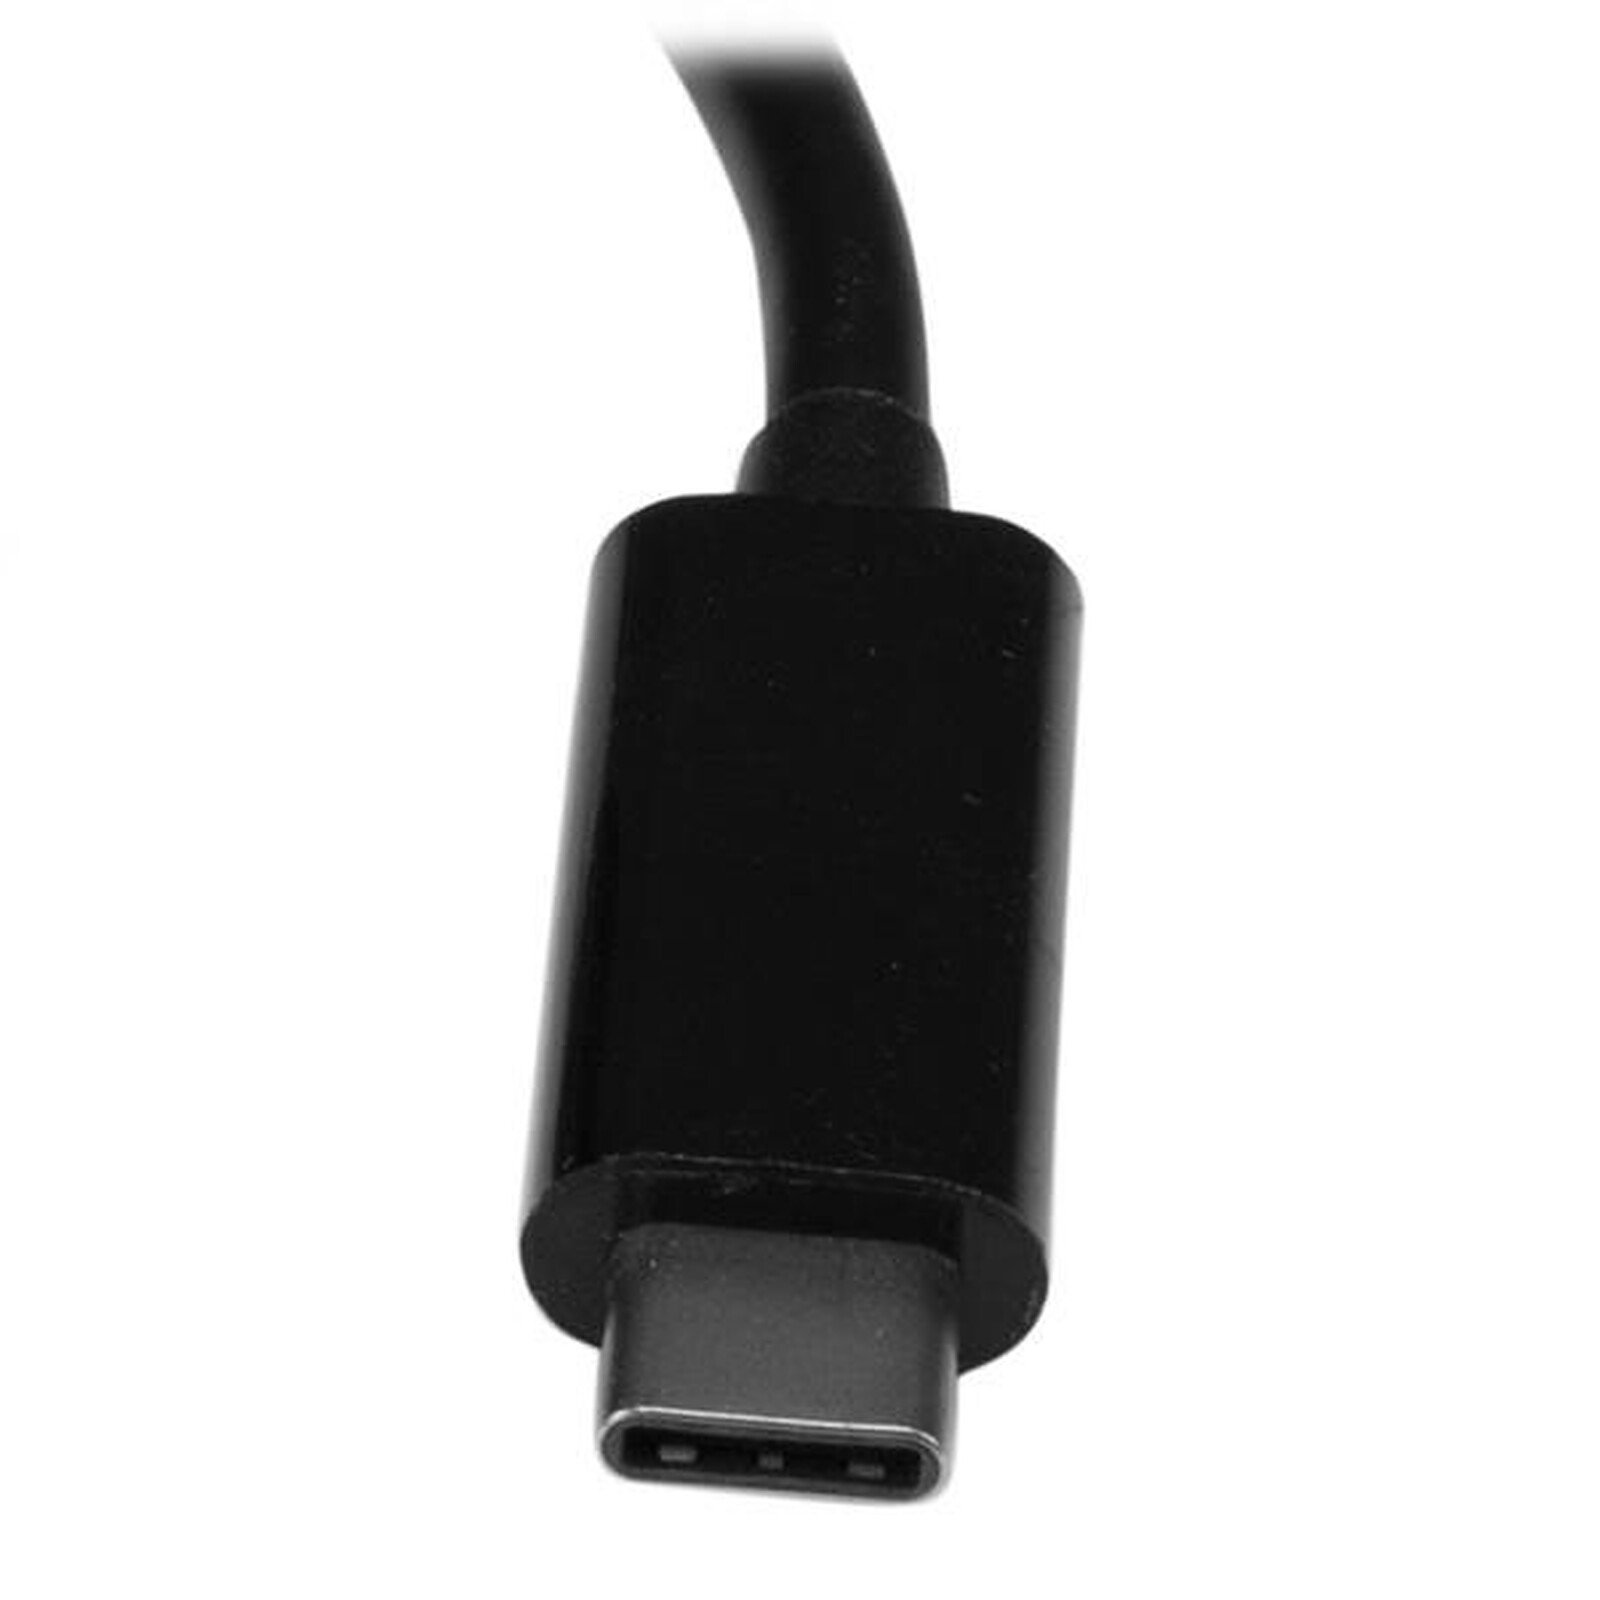 StarTech.com Adaptateur réseau Gigabit Ethernet (USB 3.0) avec câble 30 cm  - Carte réseau - Garantie 3 ans LDLC